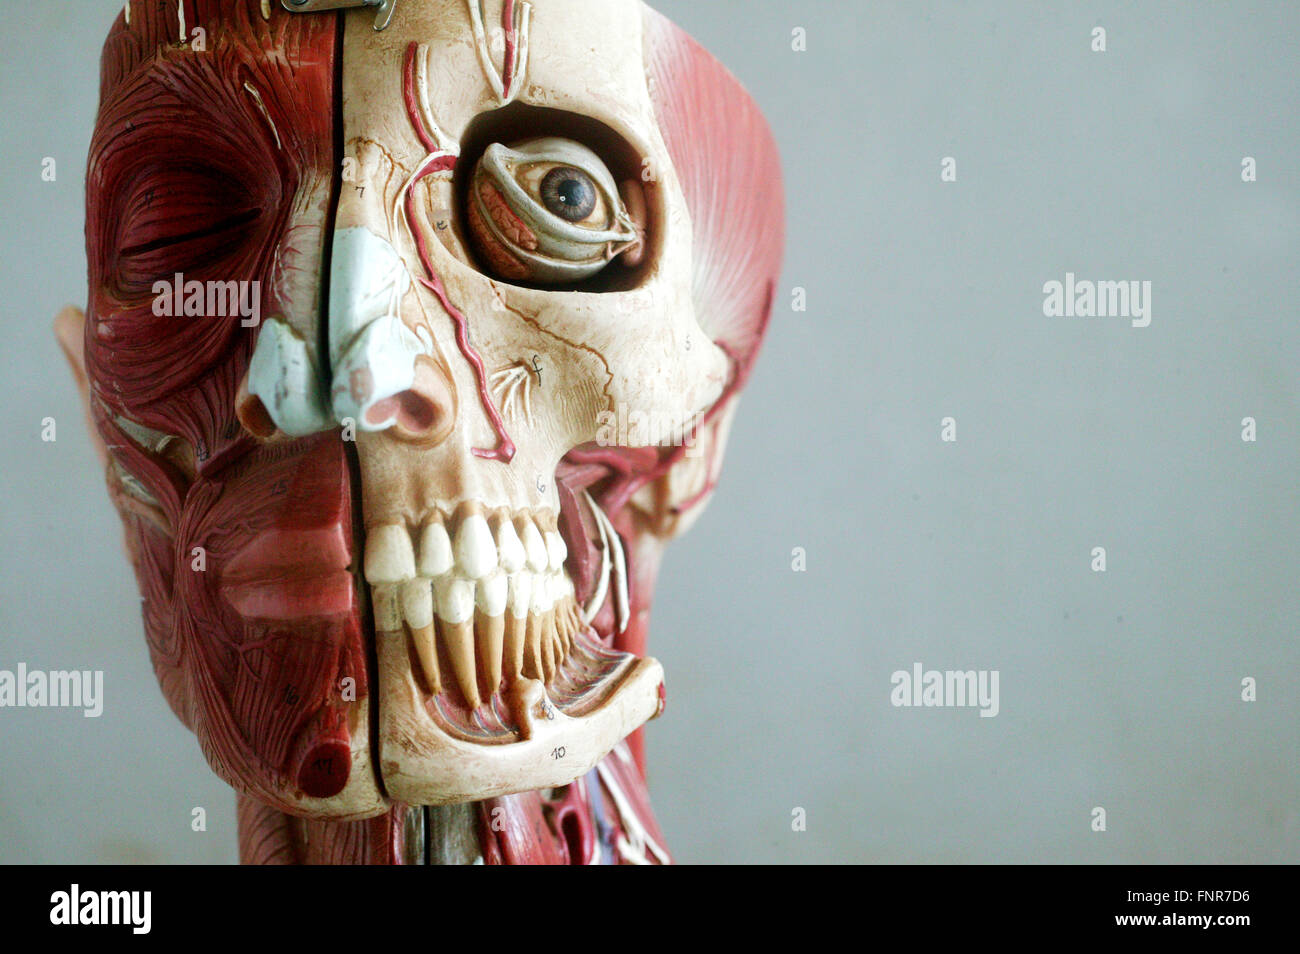 Anatomisches Modell zeigt die skelettalen und muskulären Strukturen des Gesichts. Stockfoto